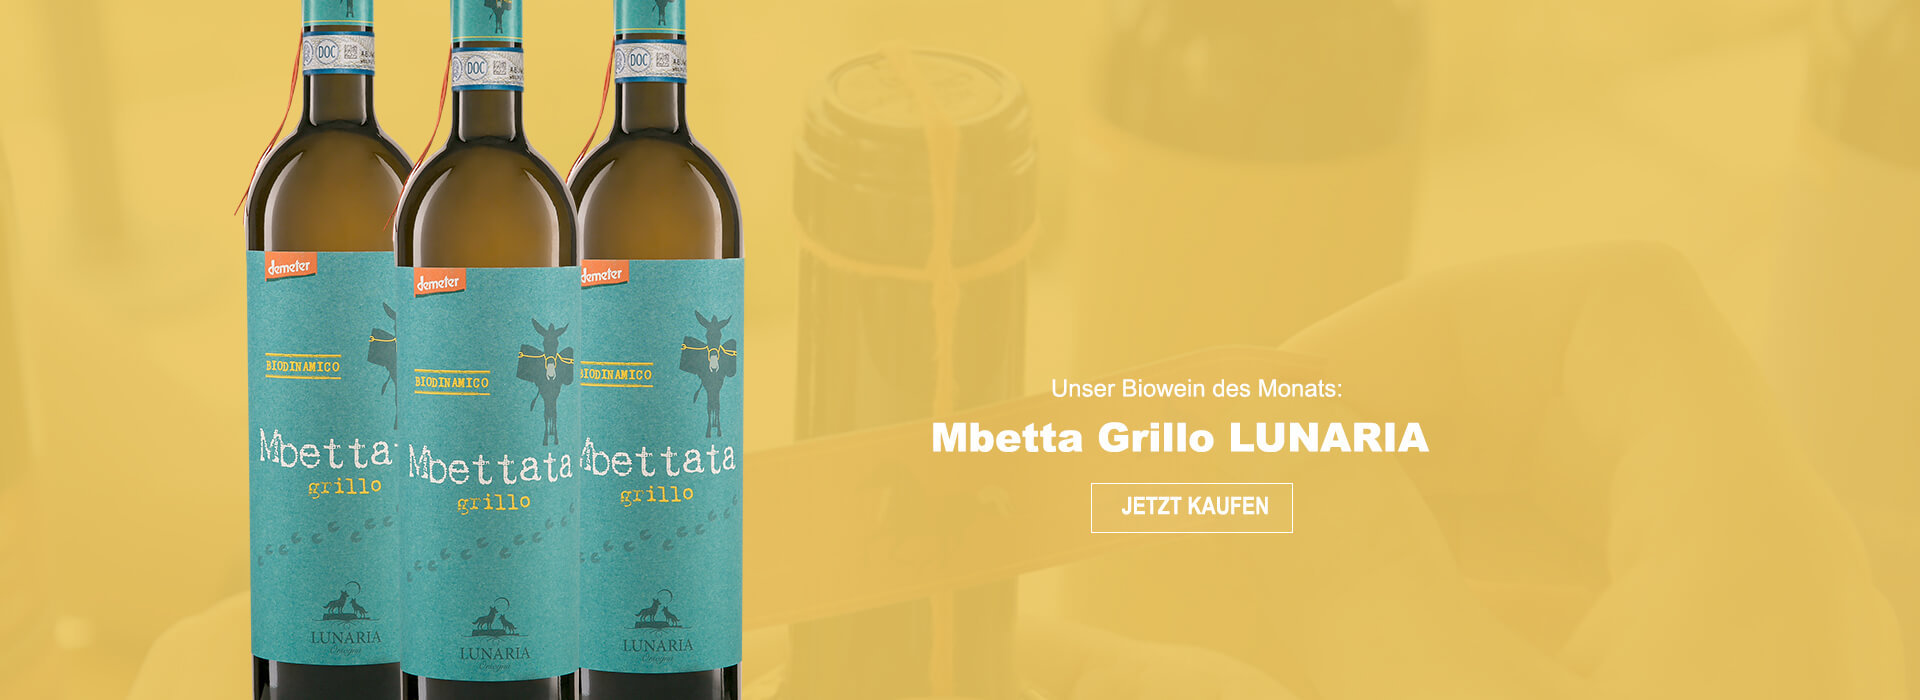 Unser Wein des Monats: Mbettata Grillo Lunaria